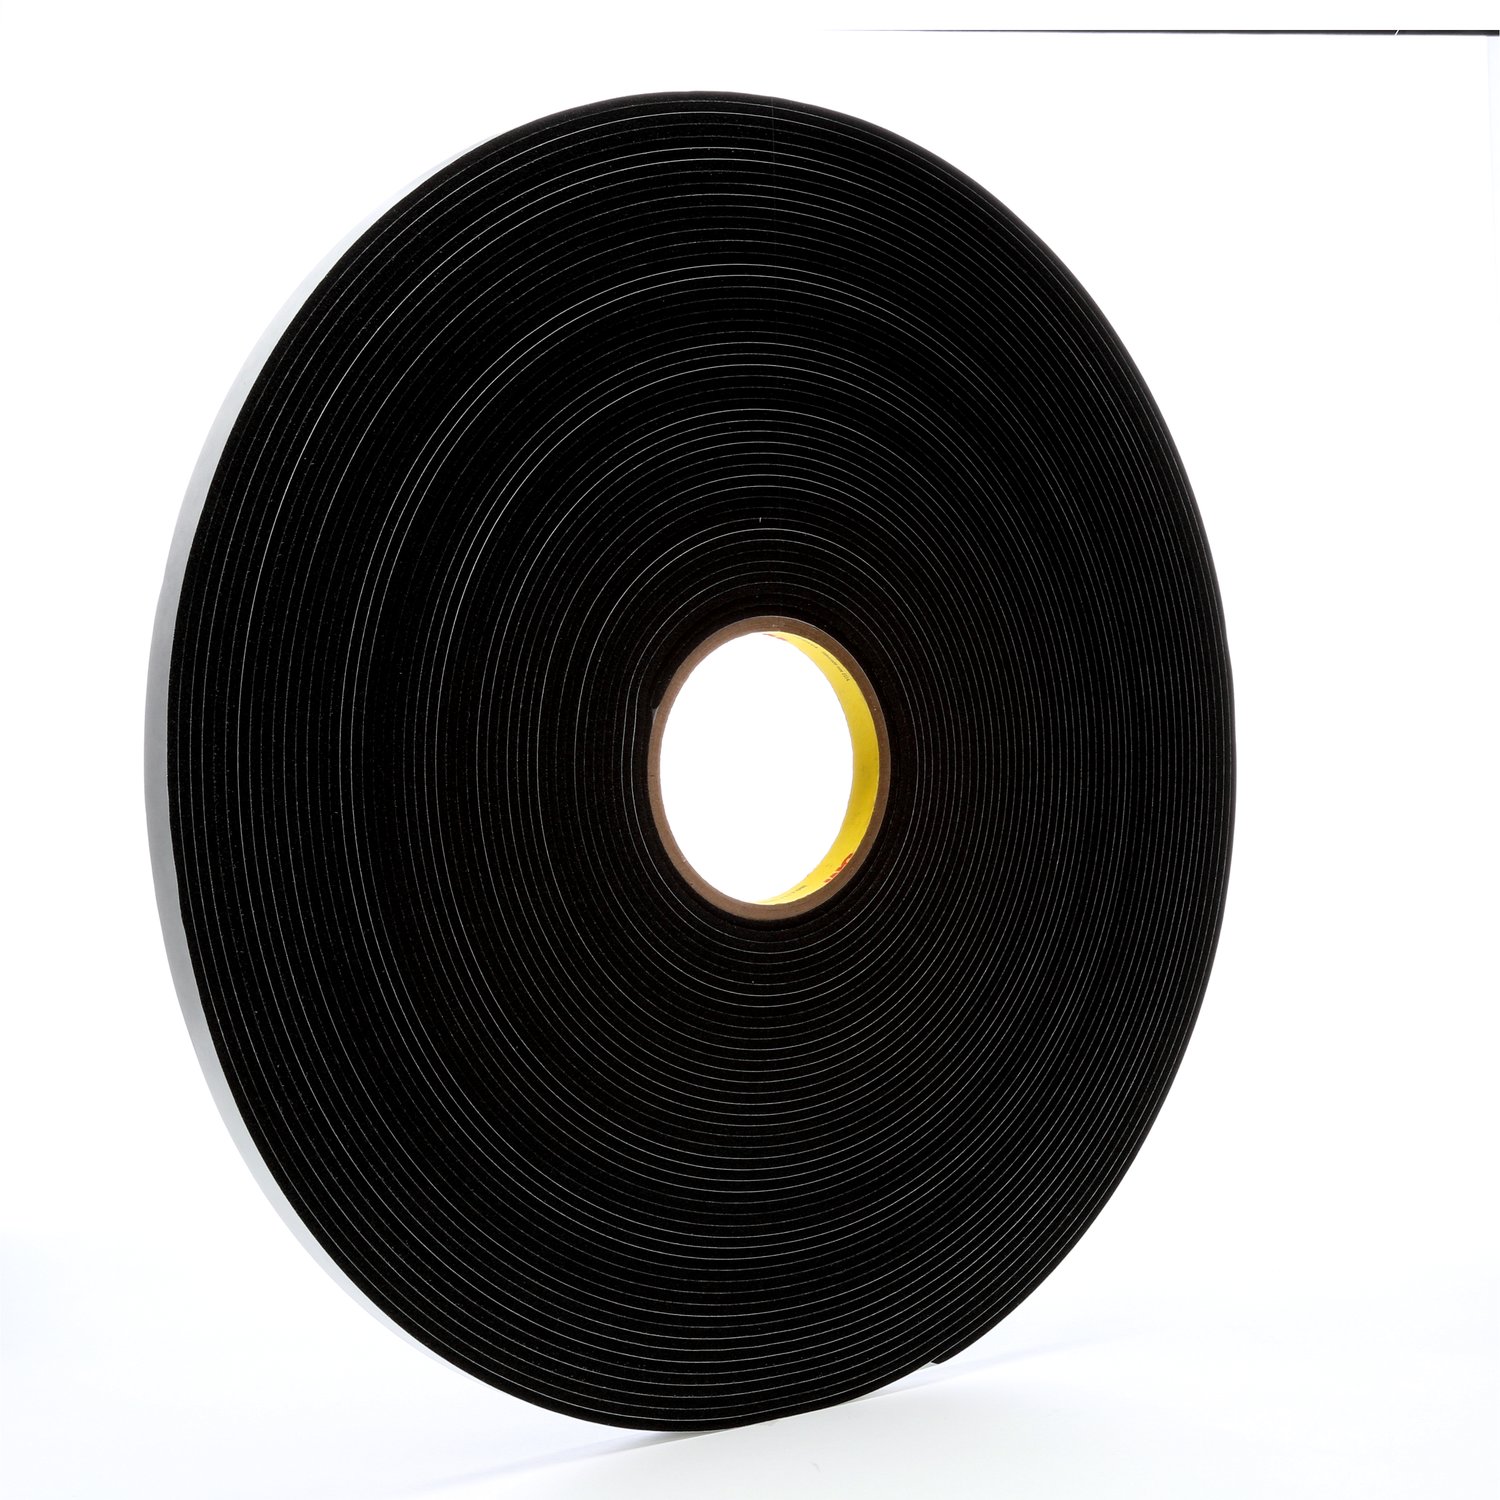 7000047496 - 3M Vinyl Foam Tape 4508, Black, 1/2 in x 36 yd, 125 mil, 18 rolls per
case